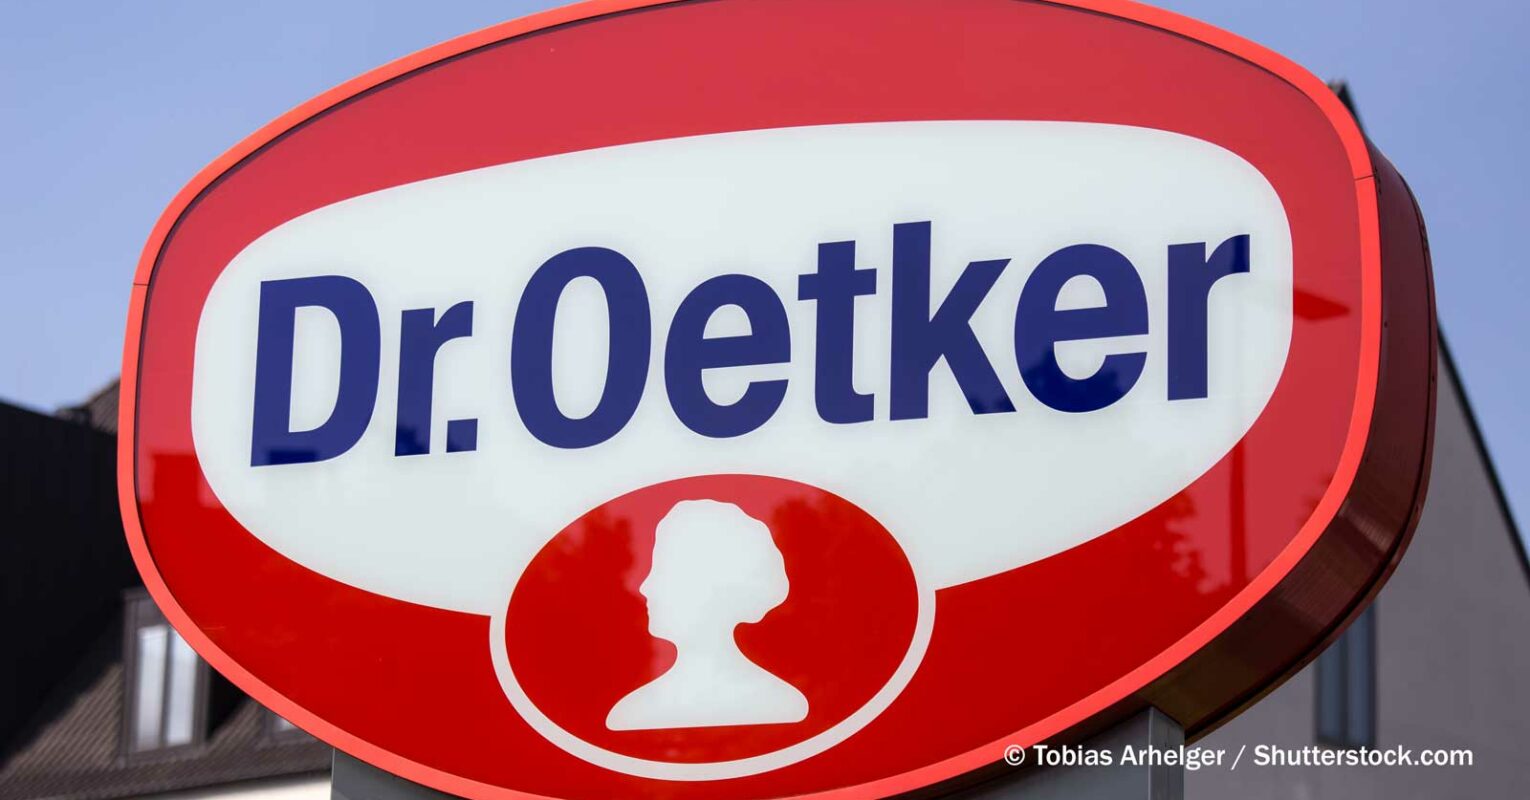 Auch Dr. Oetker gibt Russland-Rückzug an